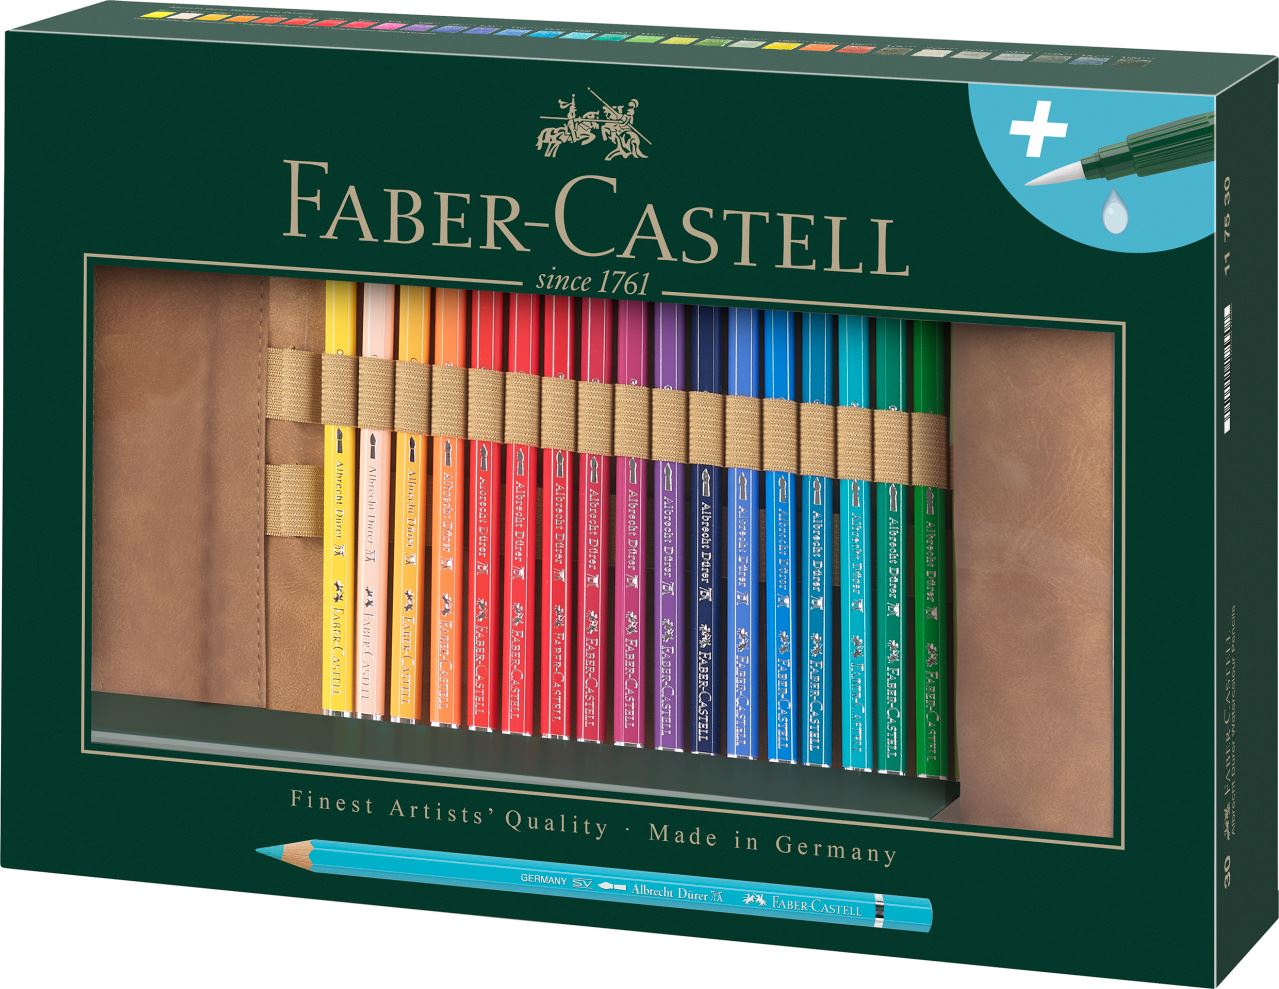 Faber-Castell - Υδατοδιαλυτή ξυλομπογιά Albrecht Dürer, κασετίνα pencil roll